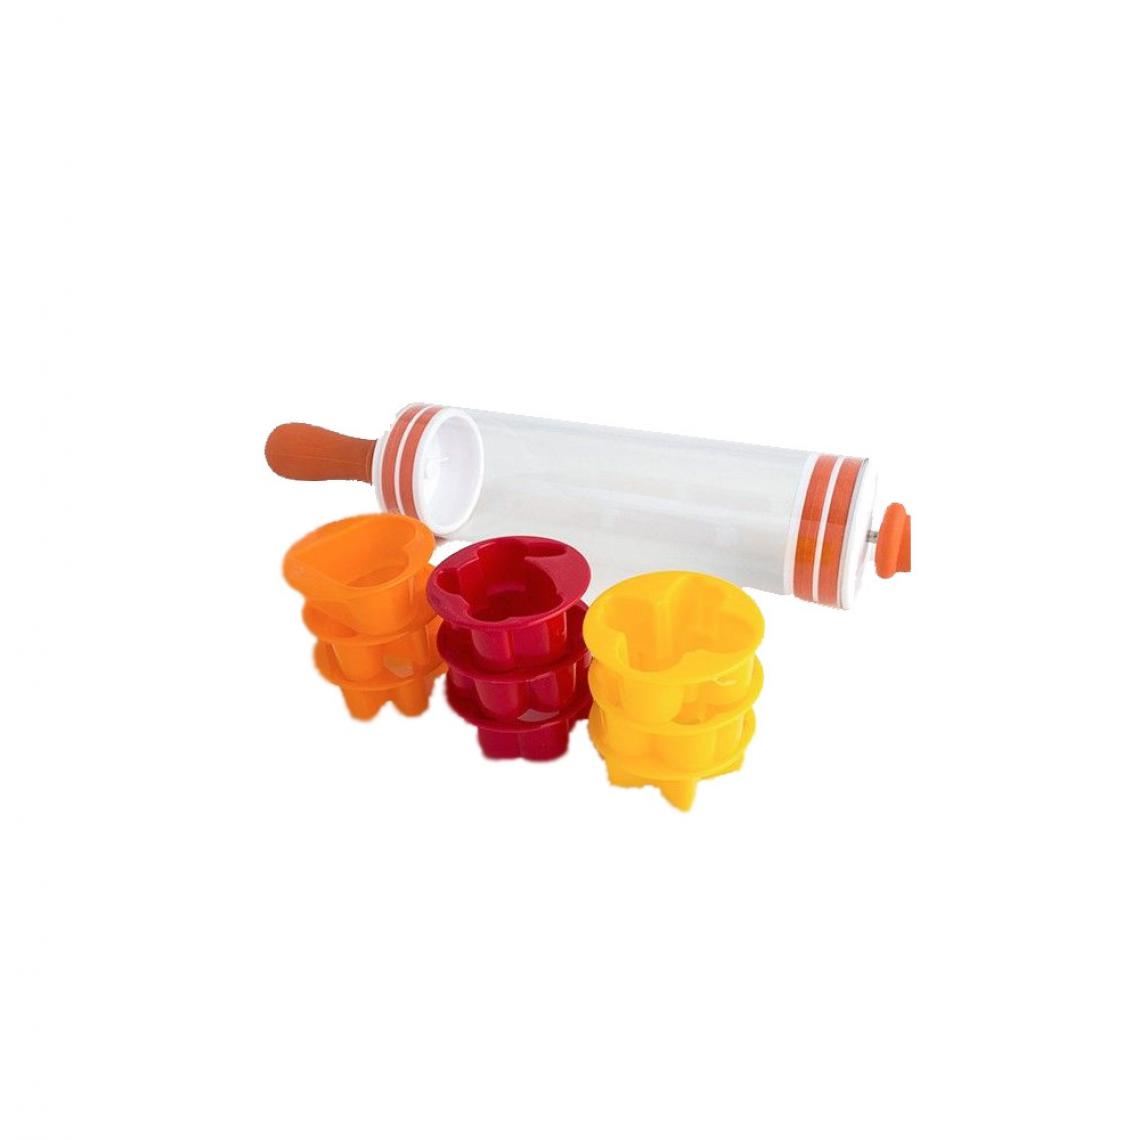 Ac-Deco - Emporte-pièces et rouleau pour biscuits - 9 pièces - Jaune, orange et rouge - Kits créatifs